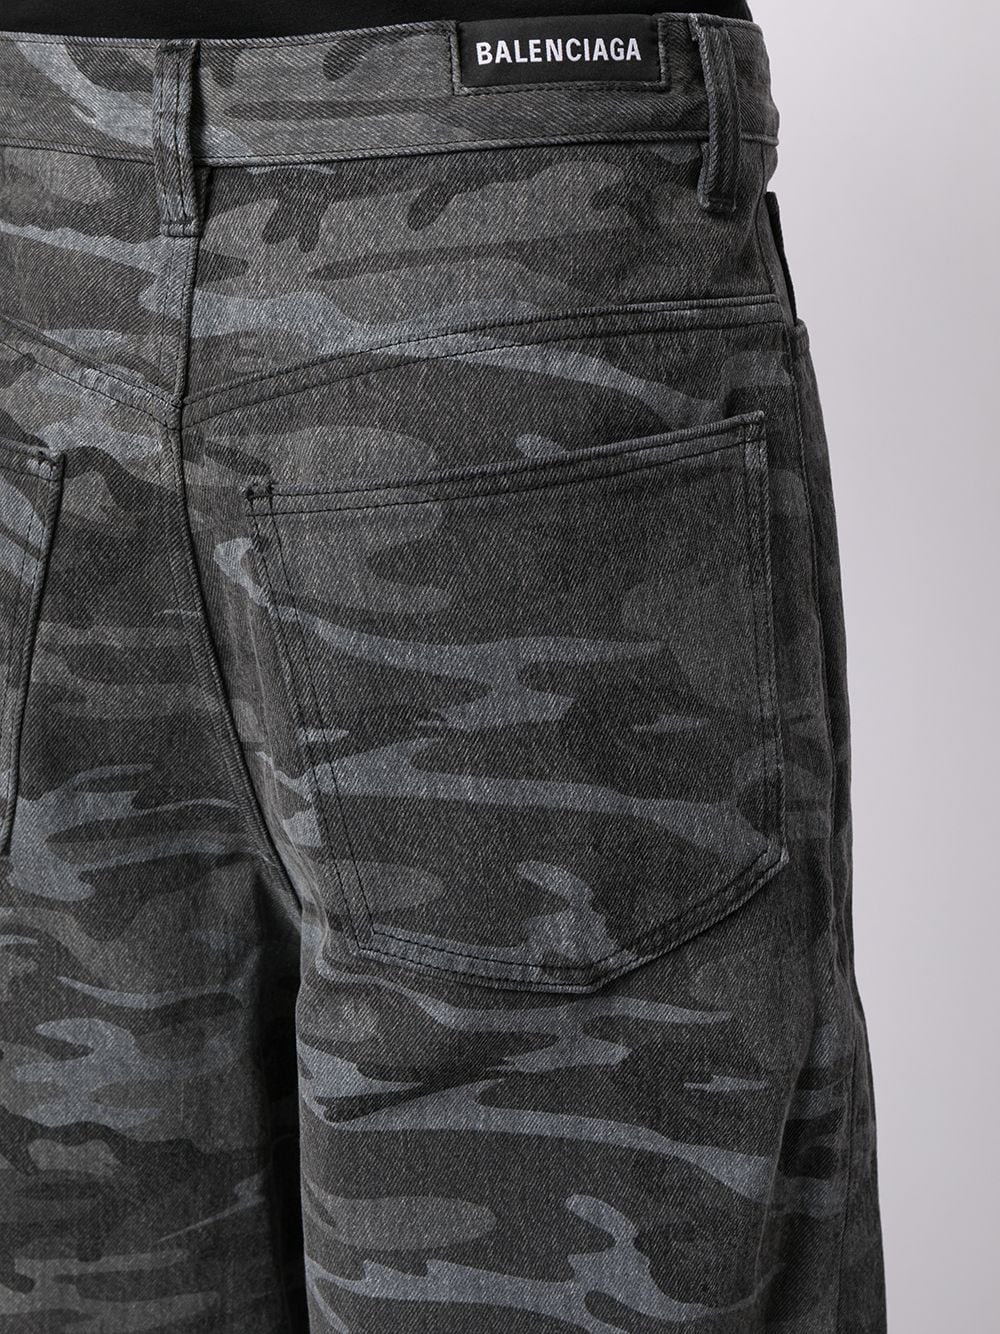 фото Balenciaga джинсы new baggy с камуфляжным принтом